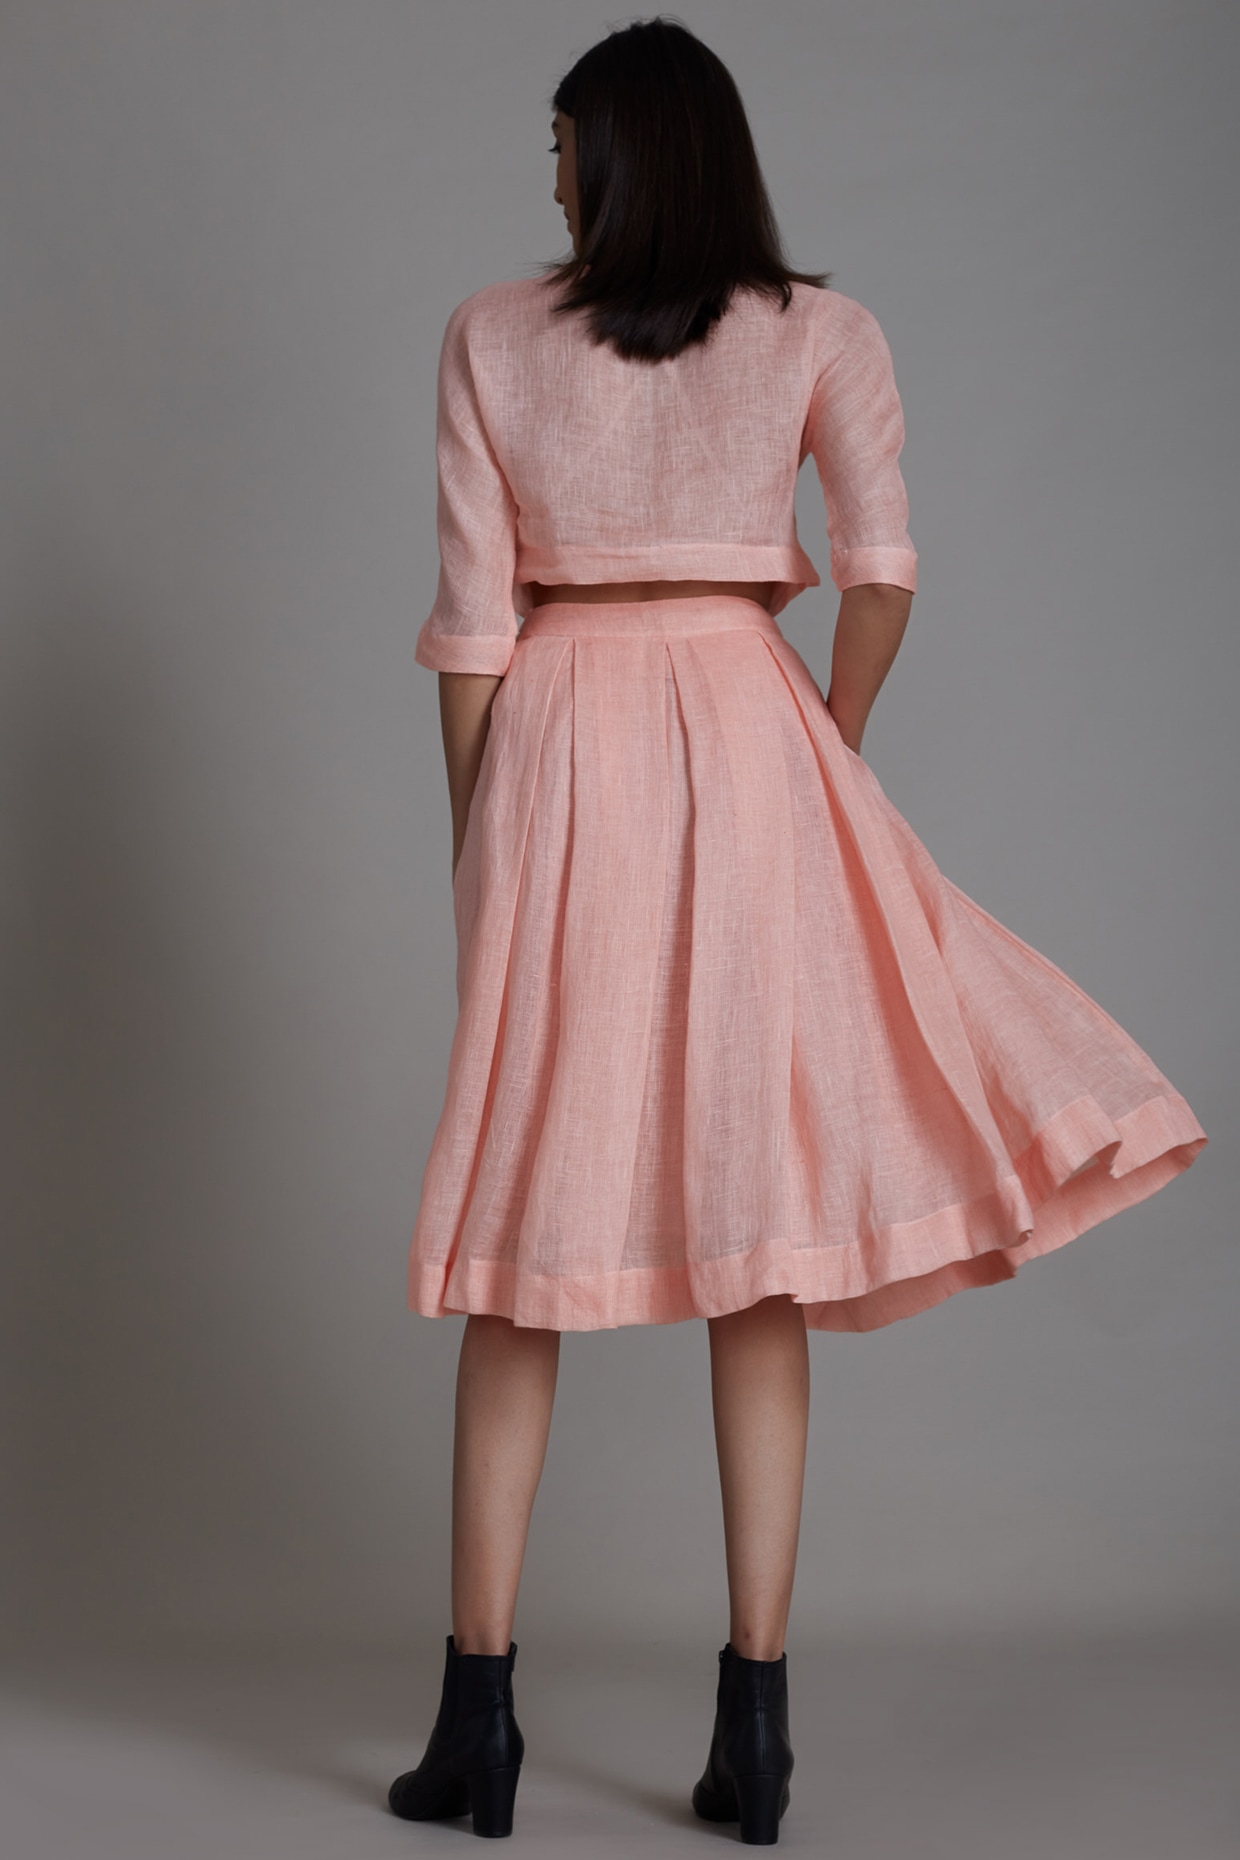 Linen Pull-on Skirt – the thread